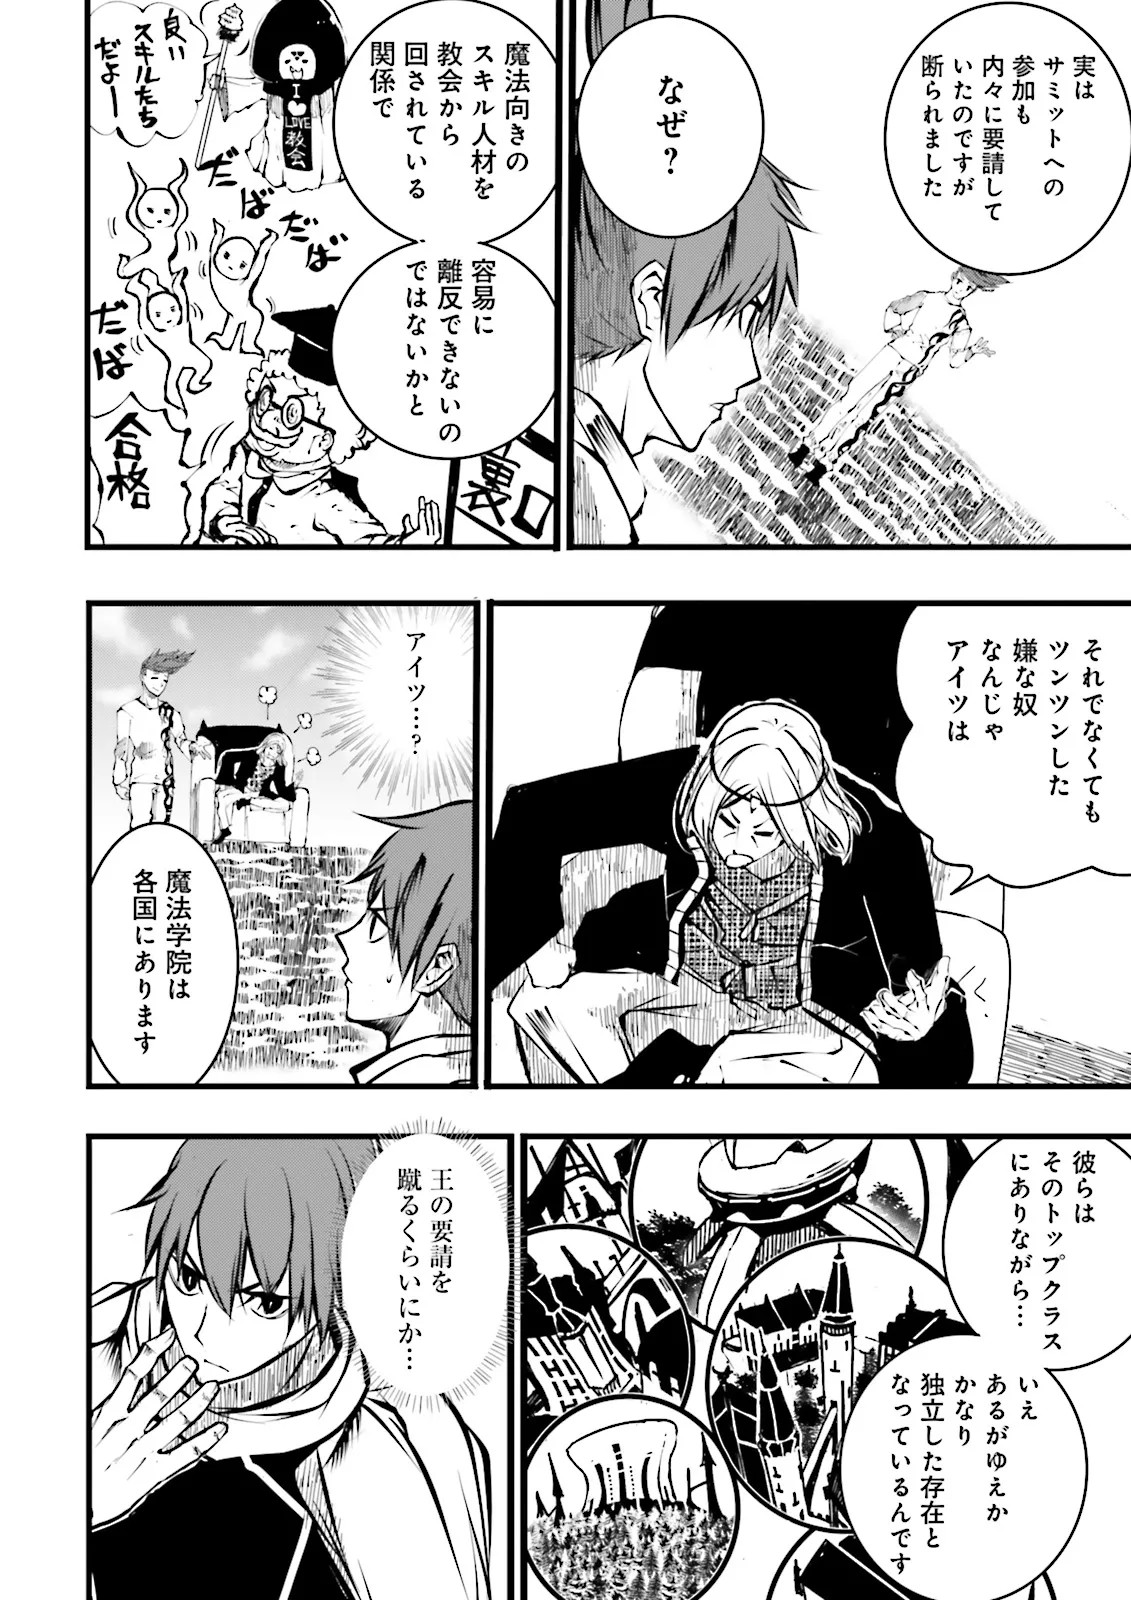 Sukiru Ga Nakereba Level wo Ageru ~ 99 Ga Kansuto No Sekai De Reberu 800 Man Kara Sutato ~ - Chapter 37.1 - Page 8